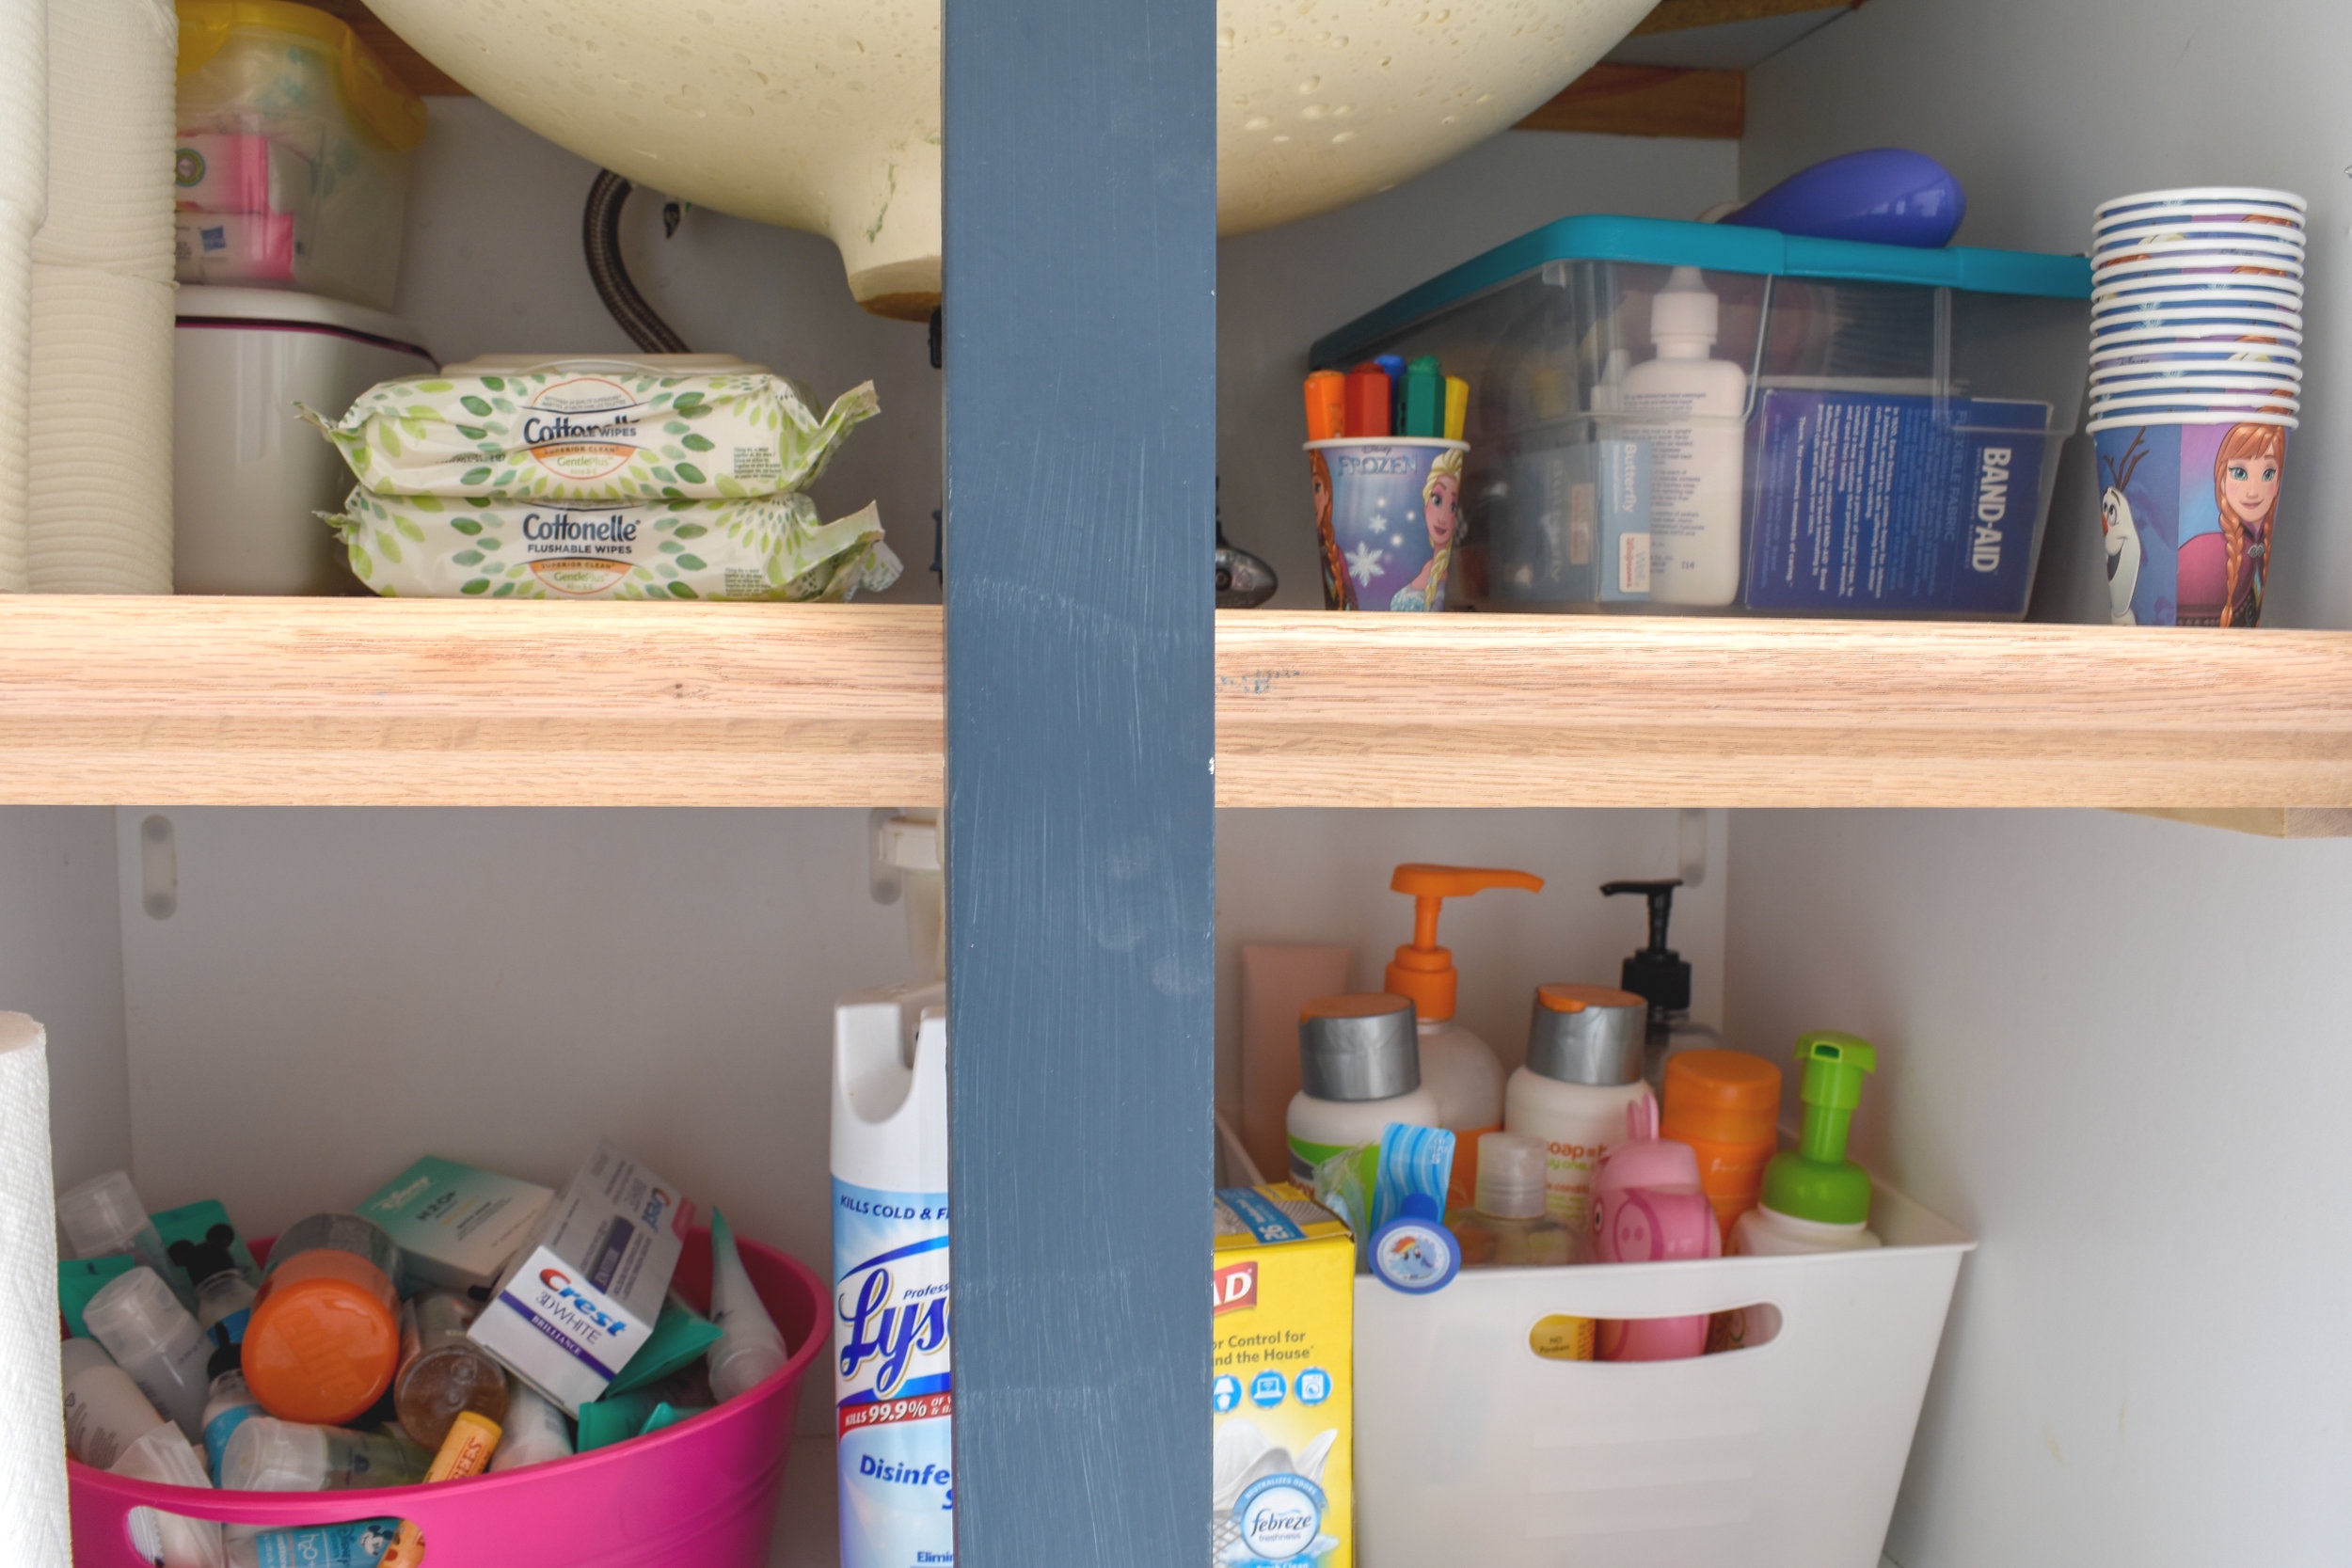 Bathroom Organizing Diy Under Cabinet, Shelves For Inside Cupboards